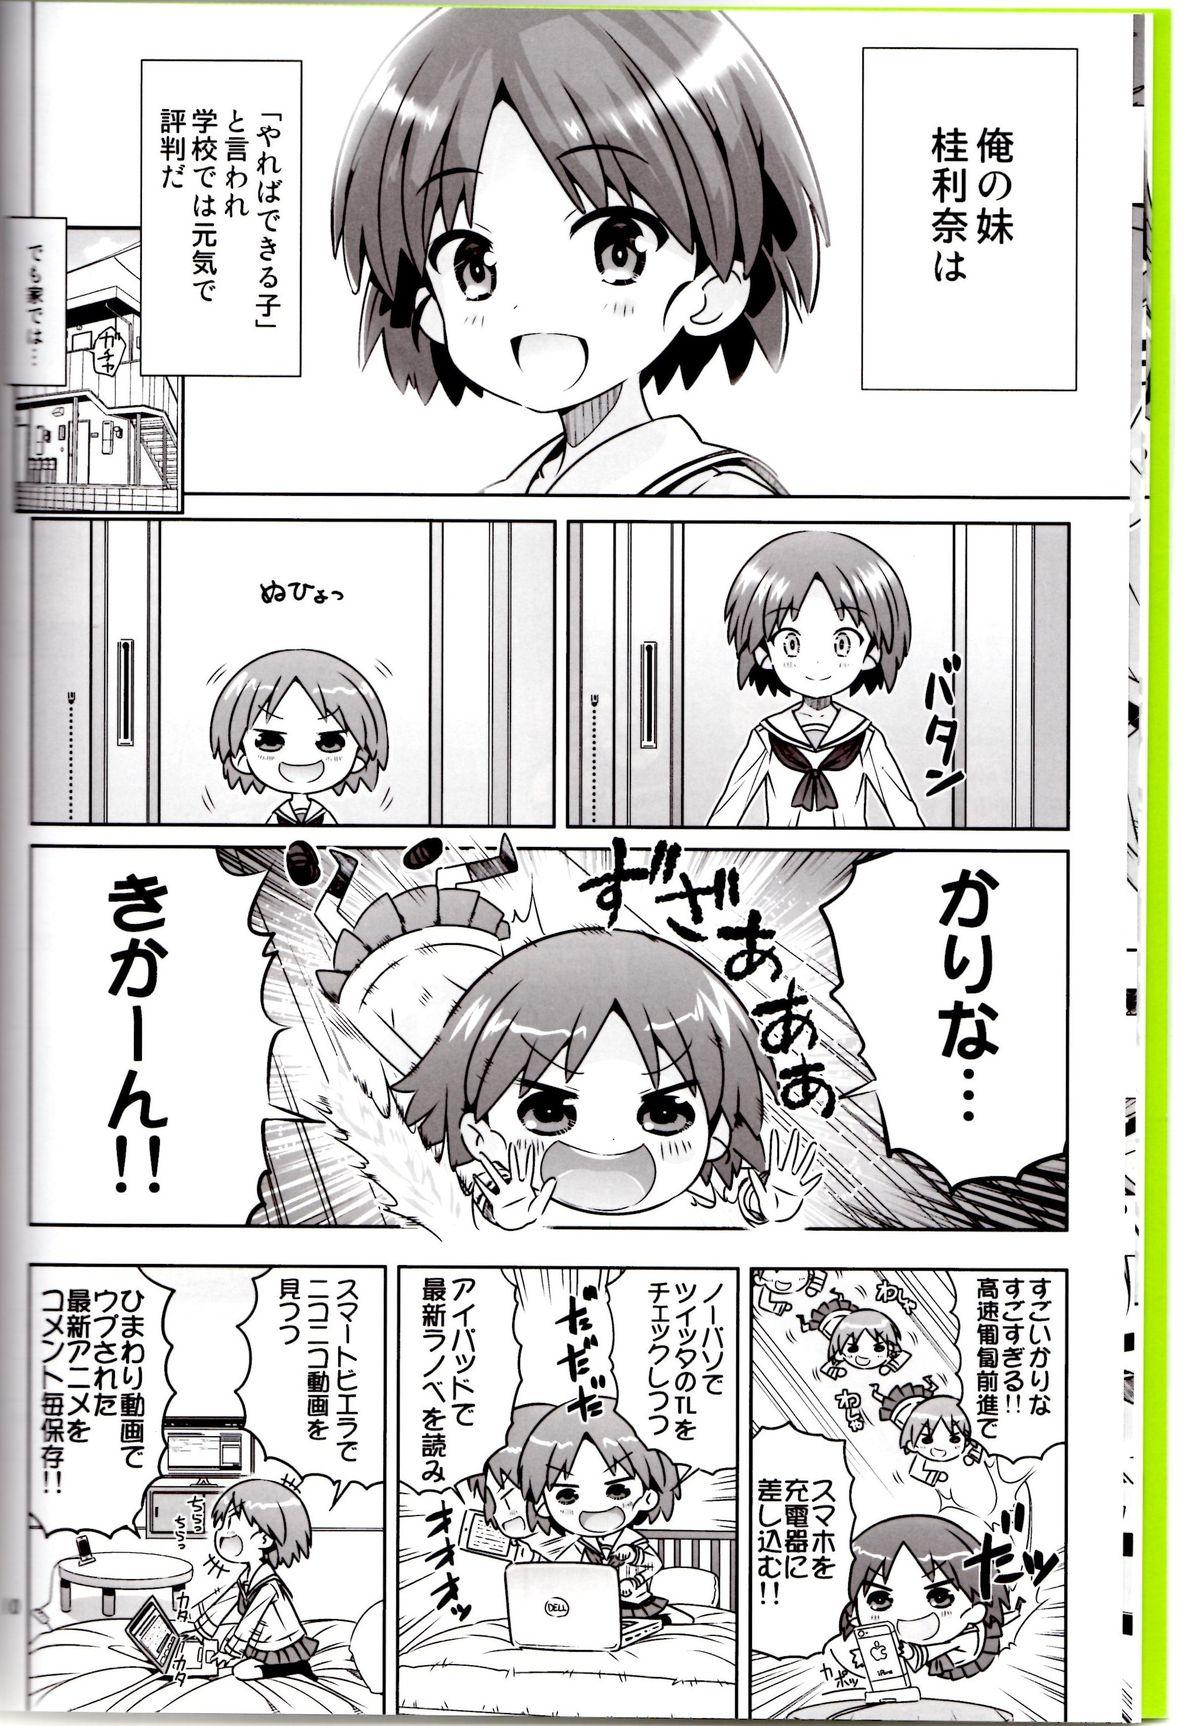 Breeding "AV Shutsuen, Ganbarimasu!!" Ichinensei wa, M-ji Kaikyaku 3 Peace desu! - Girls und panzer Carro - Page 7